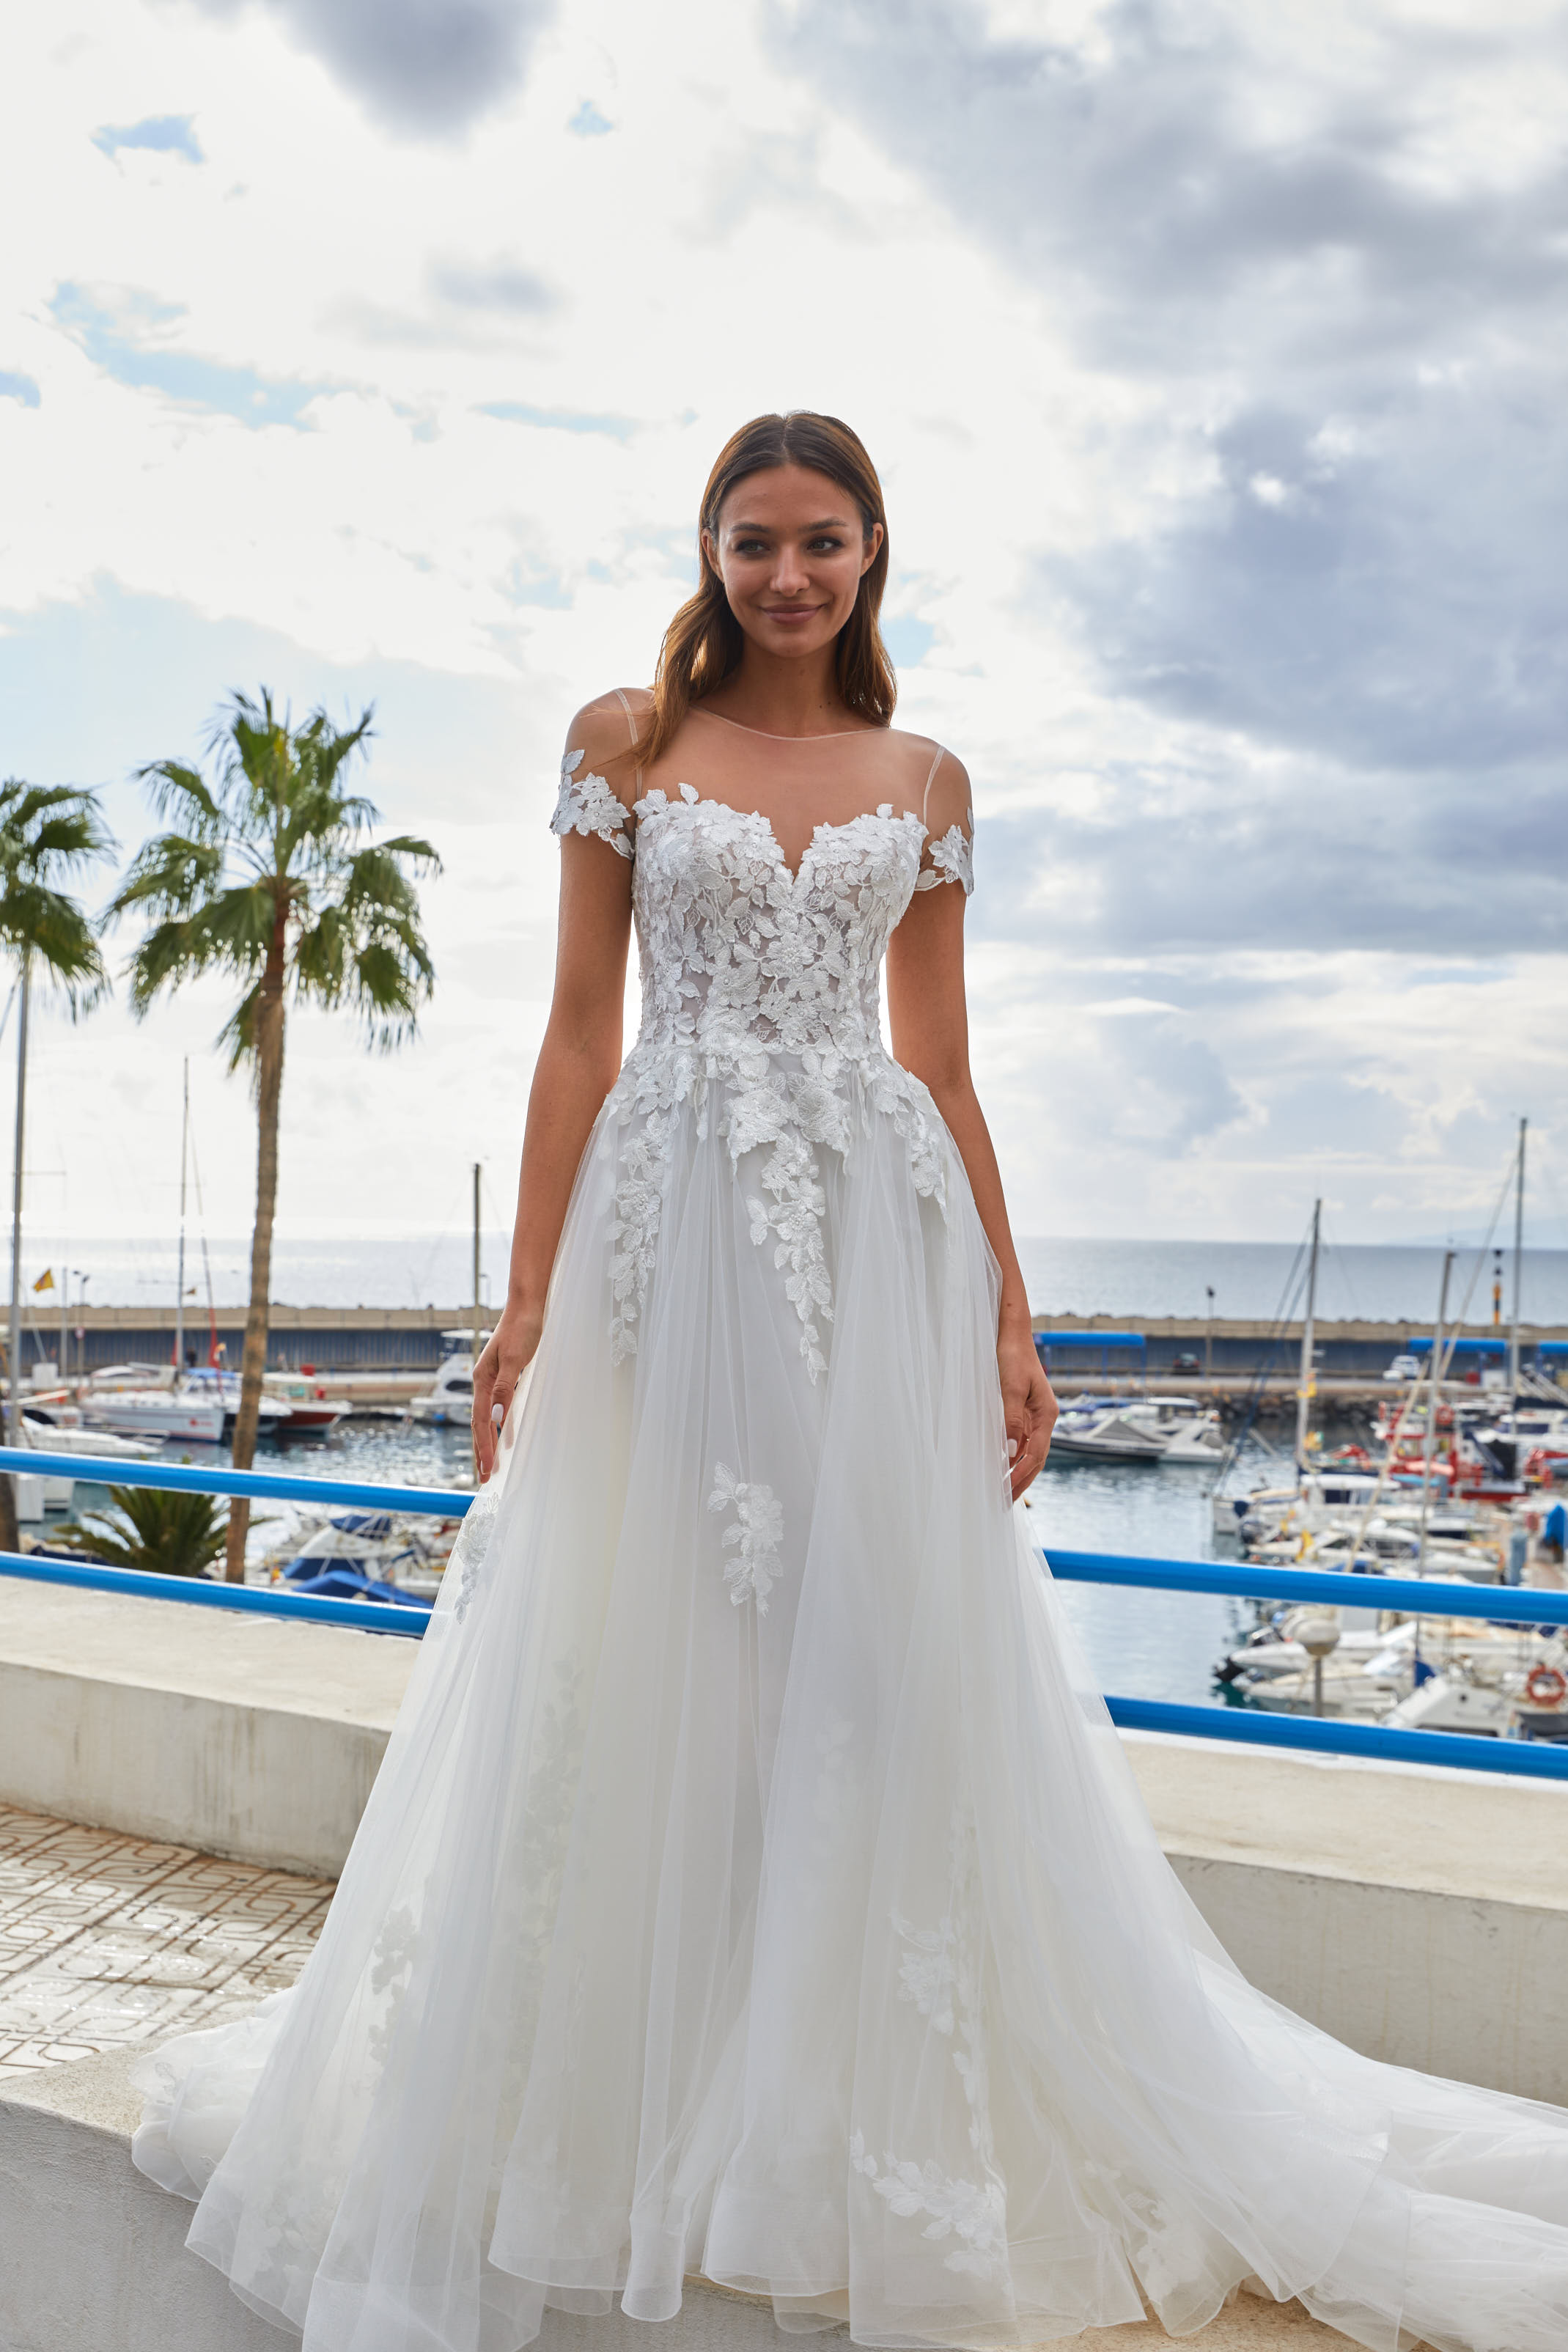 Braut in Dreamy Brautkleid von Euro Mode vor einem kleinen Hafen am Meer.